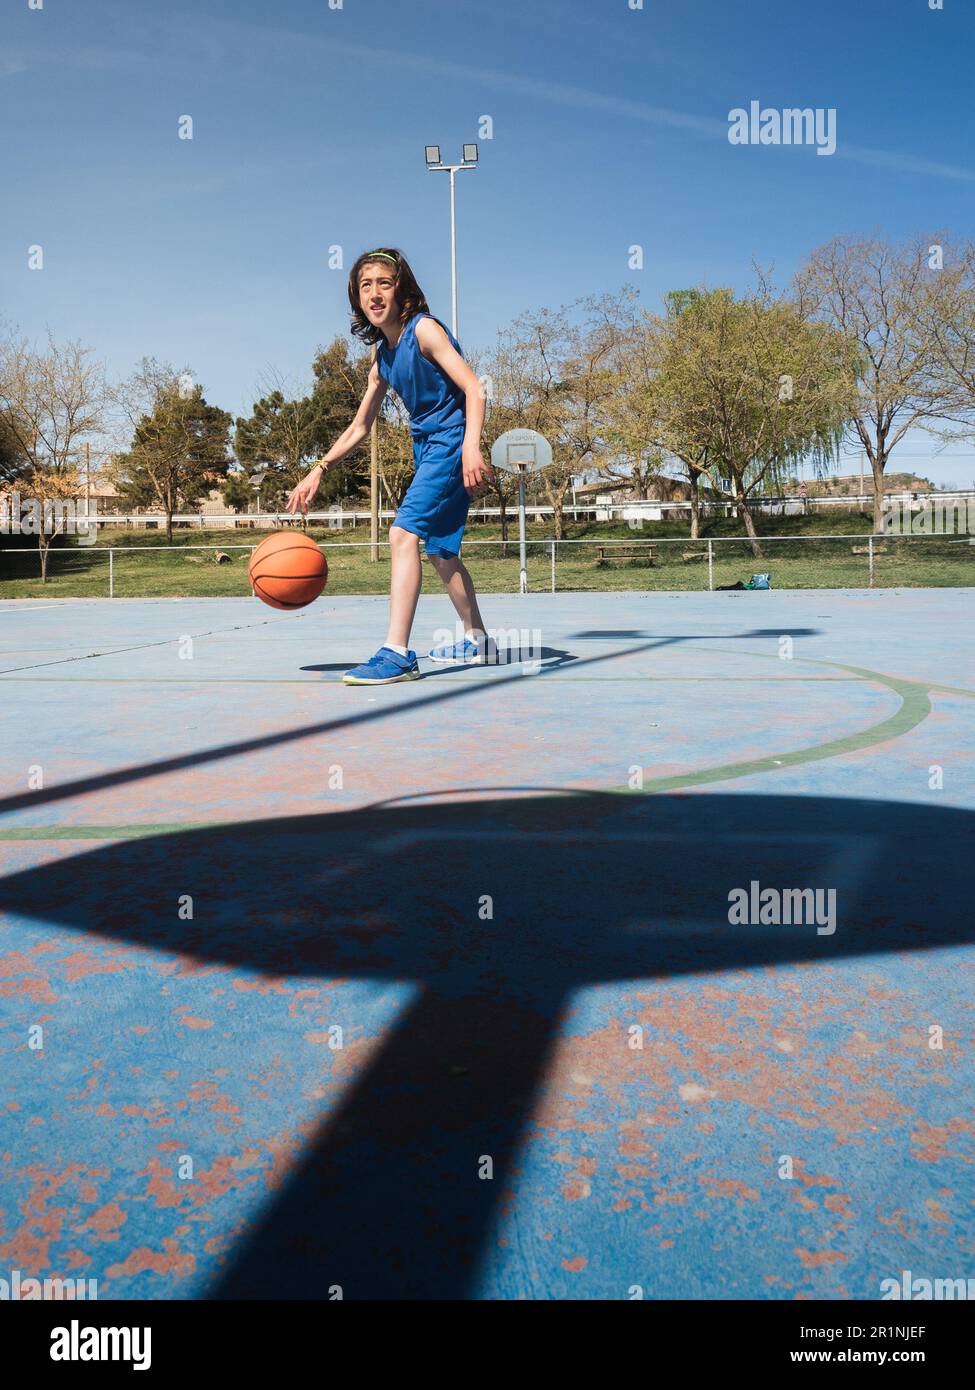 Un jeune joueur de basket-ball dans l'ombre du panier. Il rebondit le ballon sur le terrain extérieur. Banque D'Images